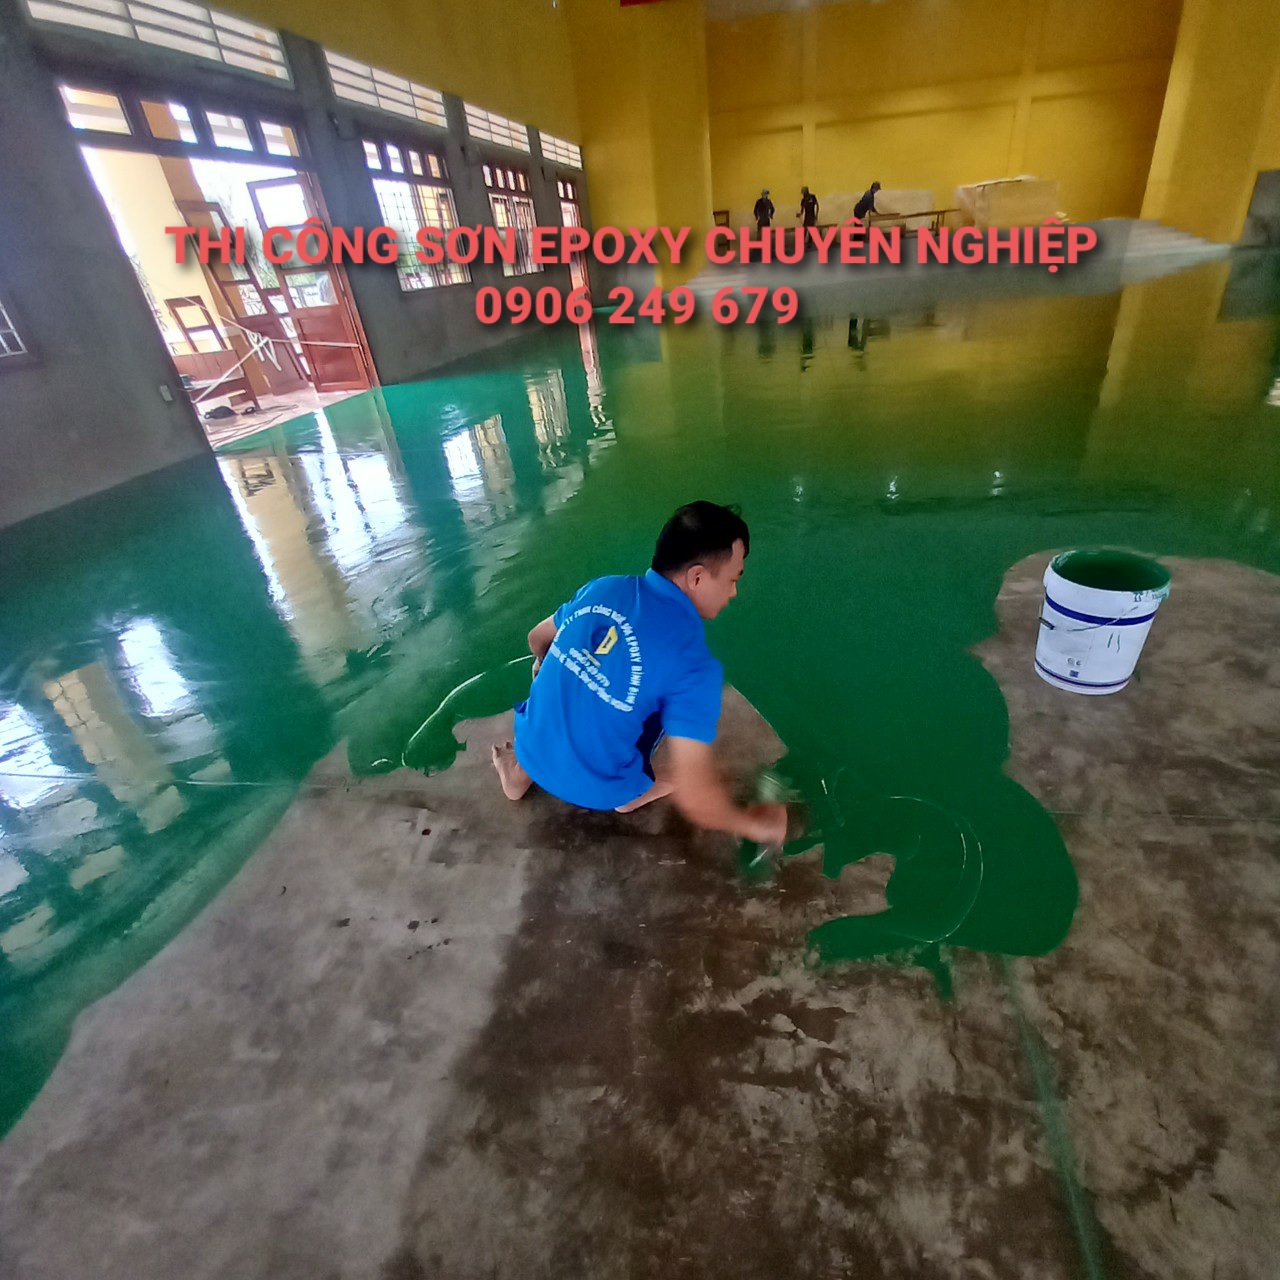 Thi công sơn epoxy tại Ninh Thuận